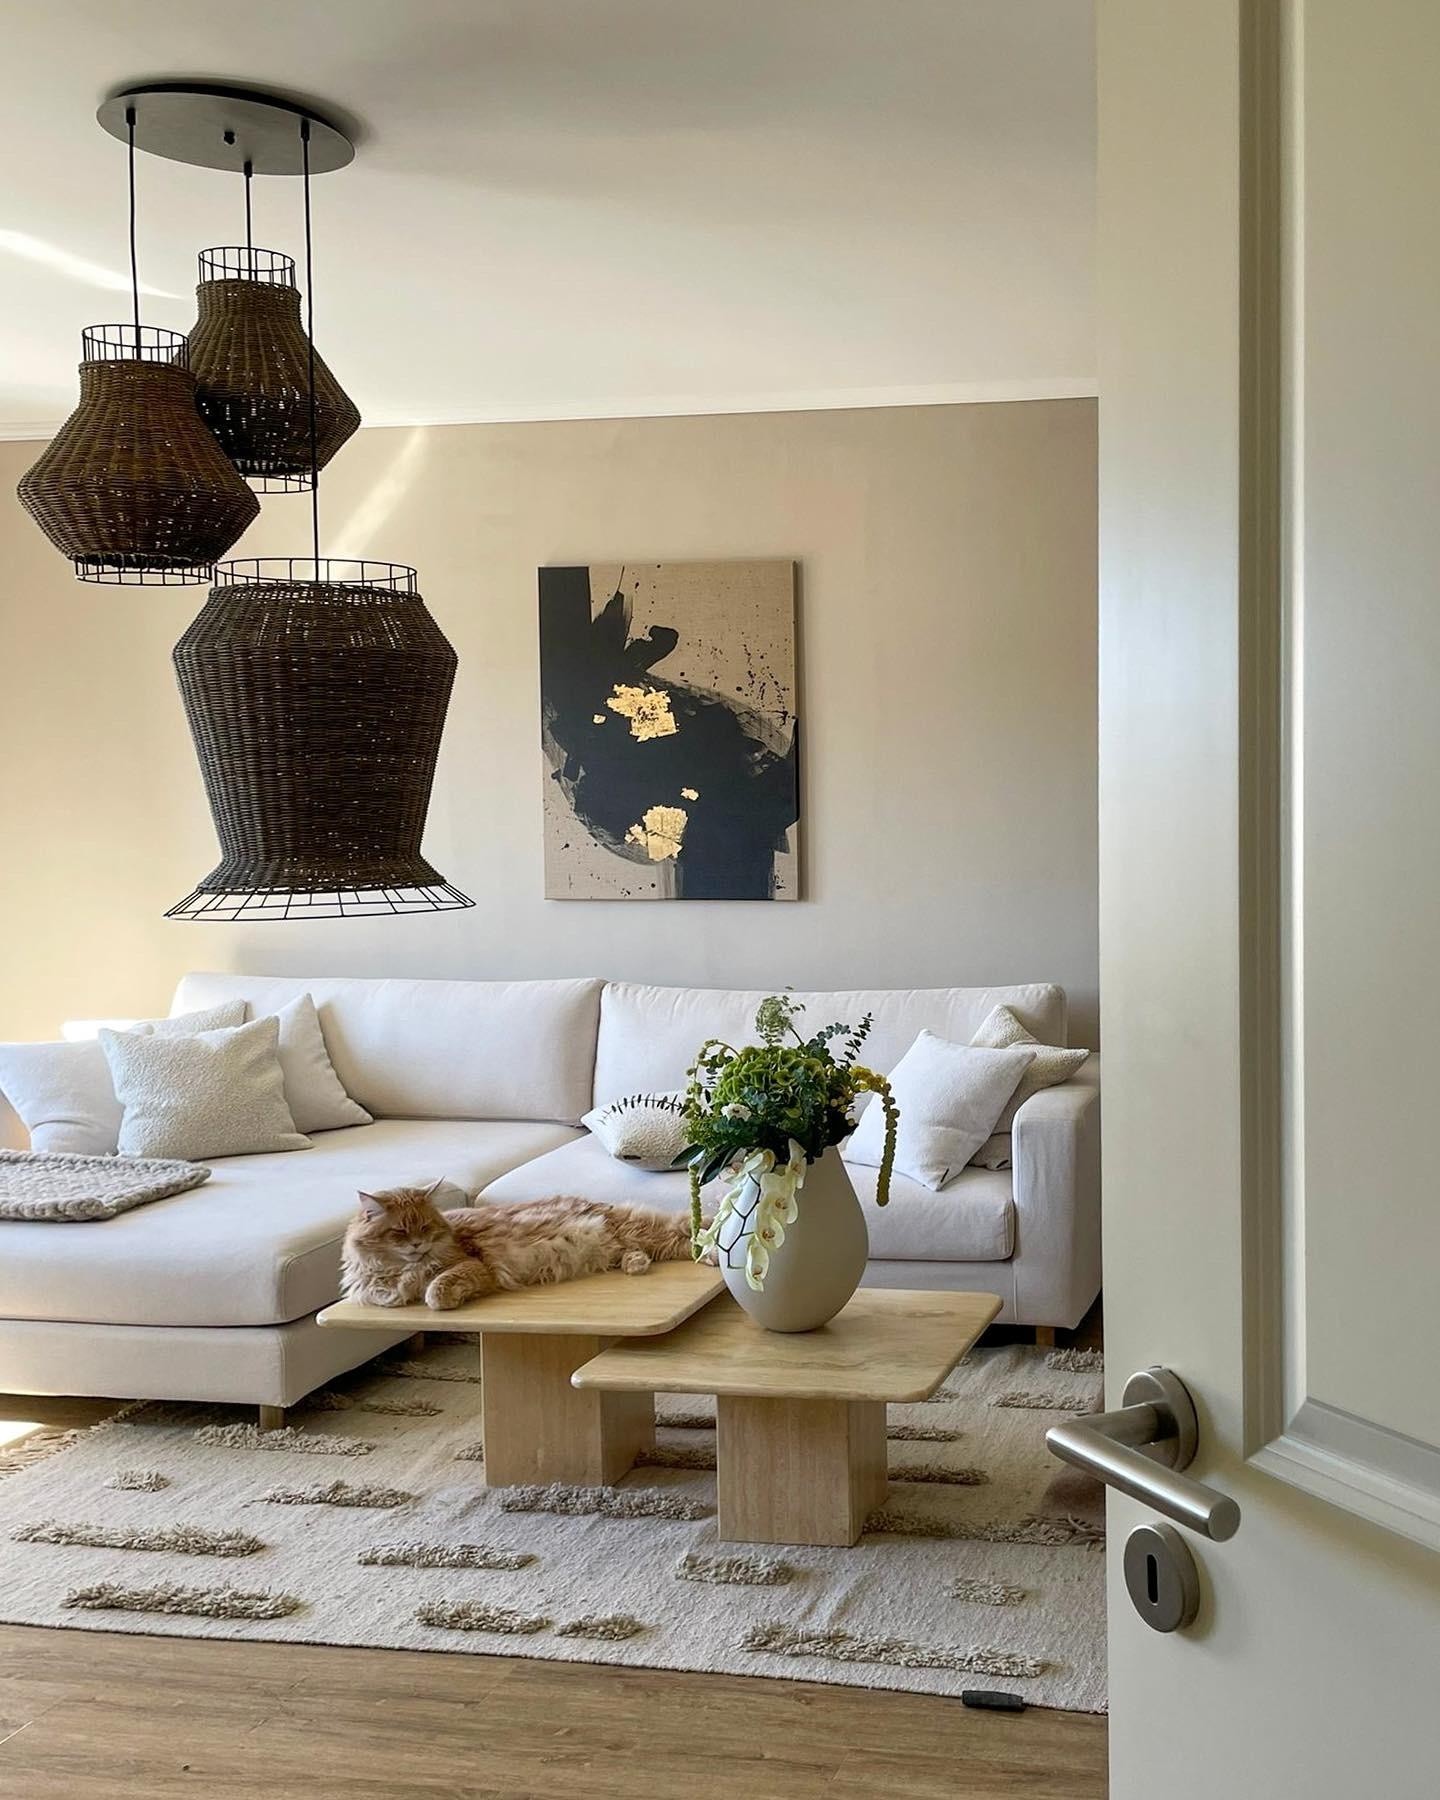 sonne, katzi und blumis - was will an mehr 🥰 #blumen #interior #couchstyle #skandi